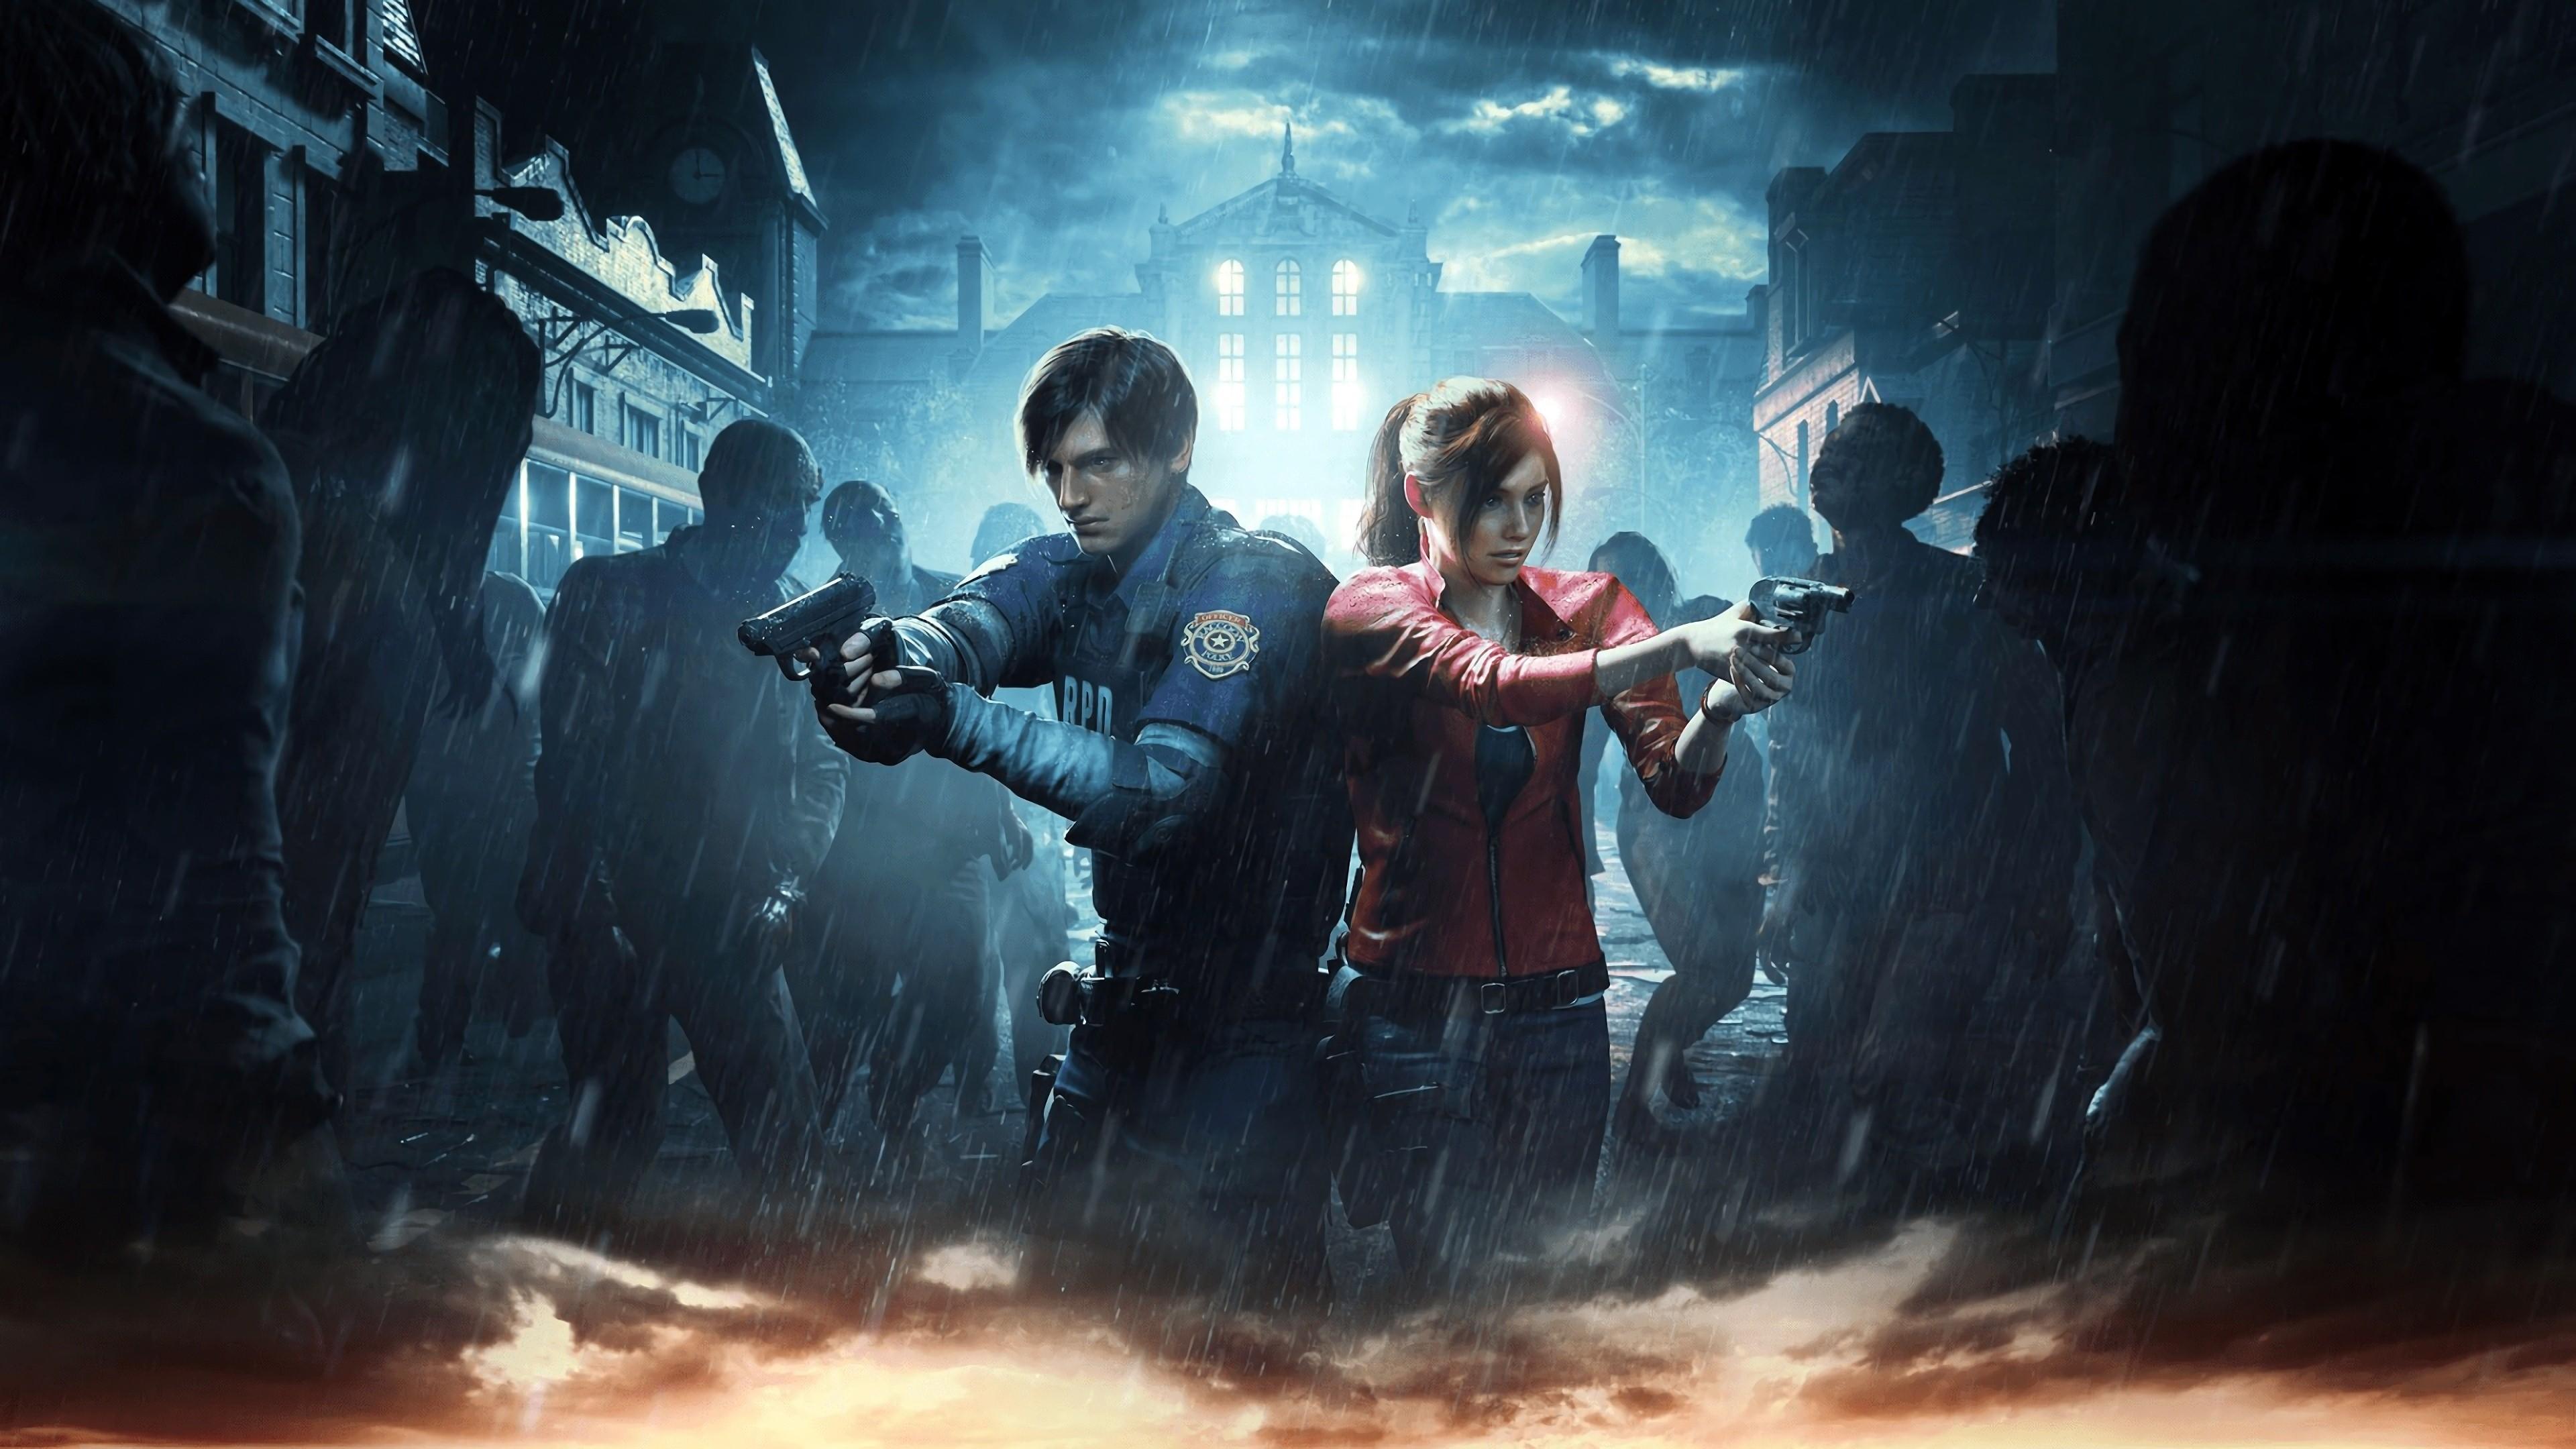 4K Wallpaper of 2019 Resident Evil 2 Survival Game. HD